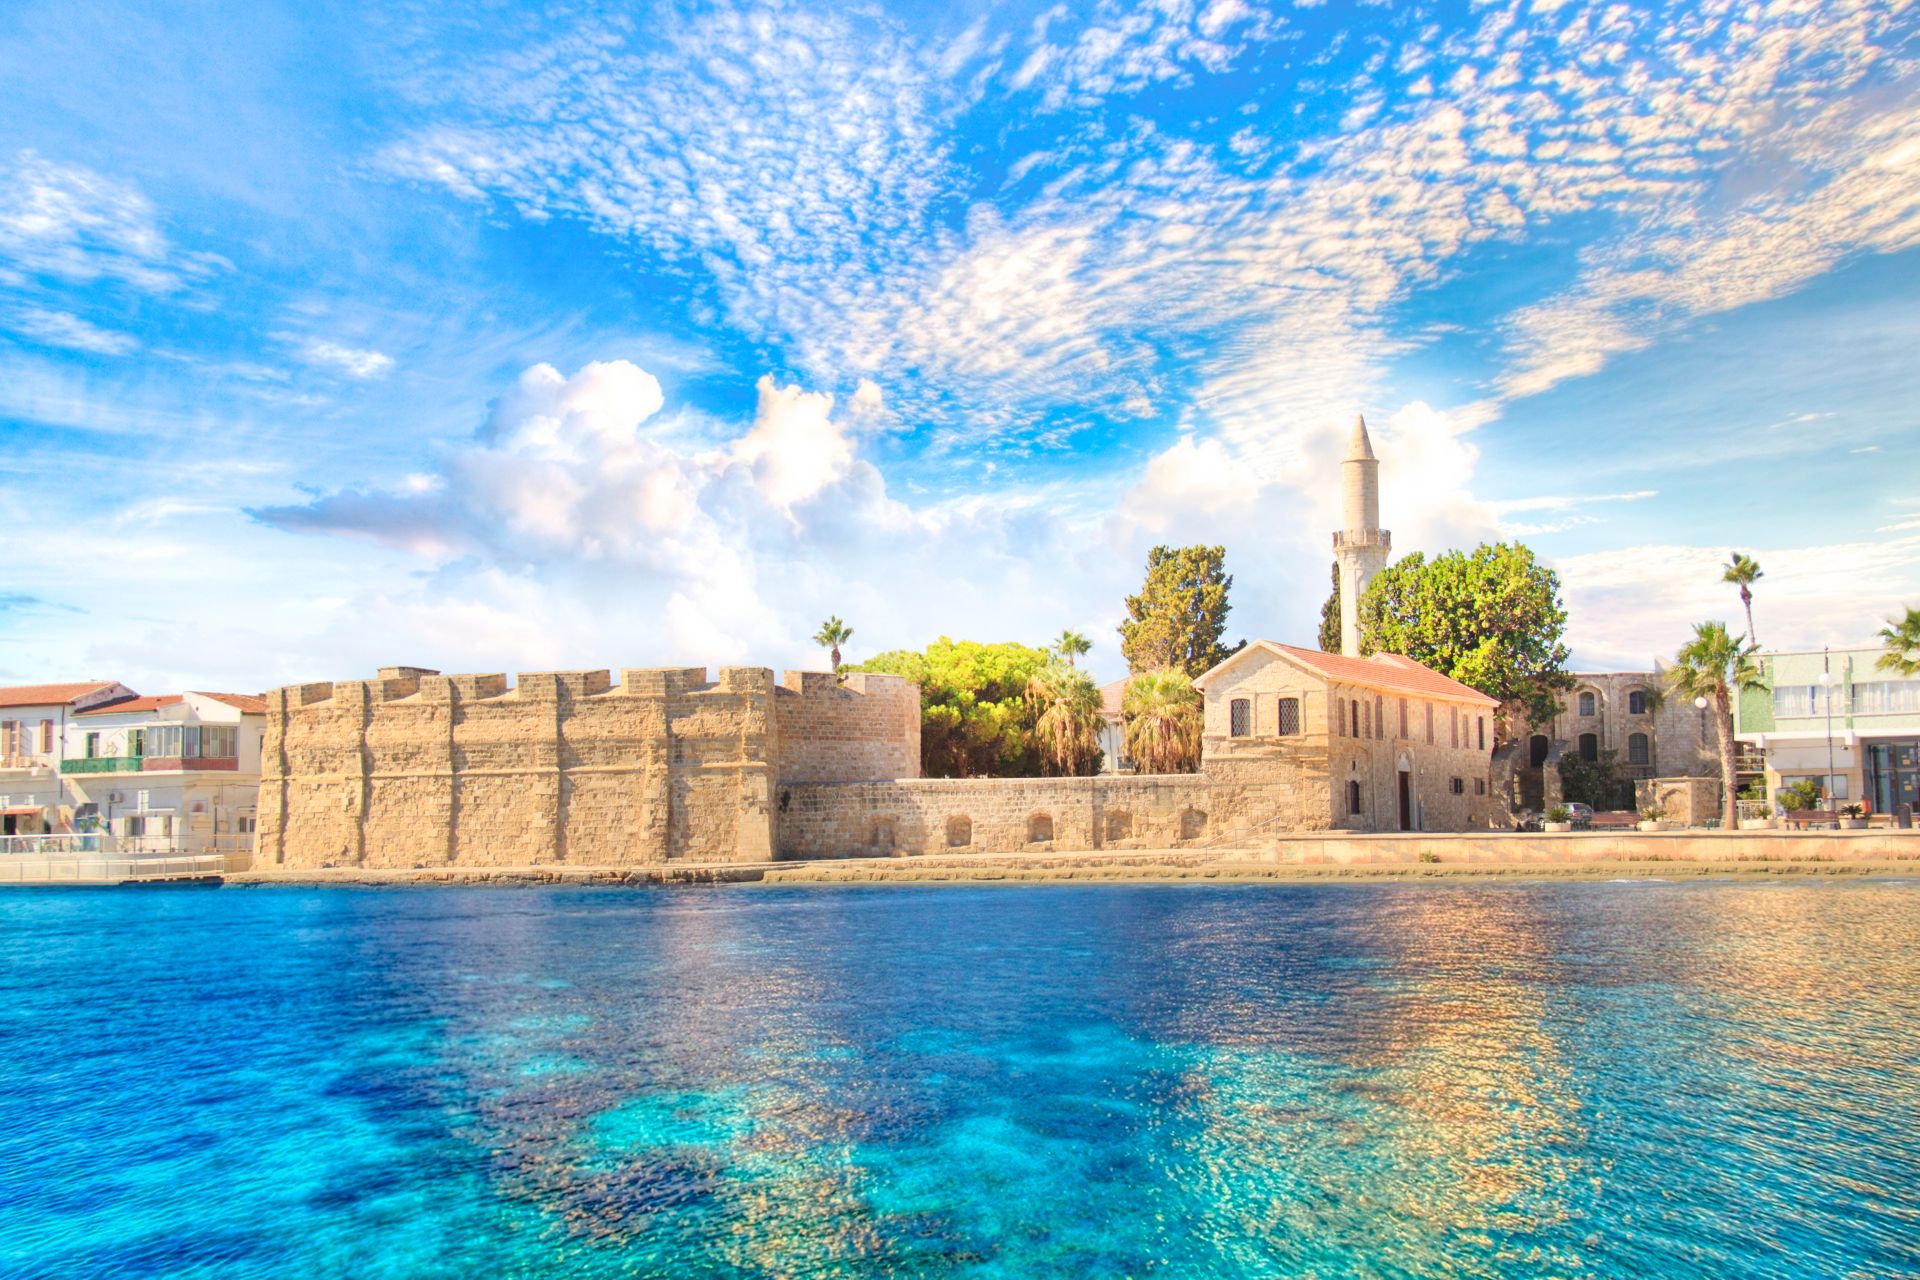 Belle vue sur le château de Larnaca